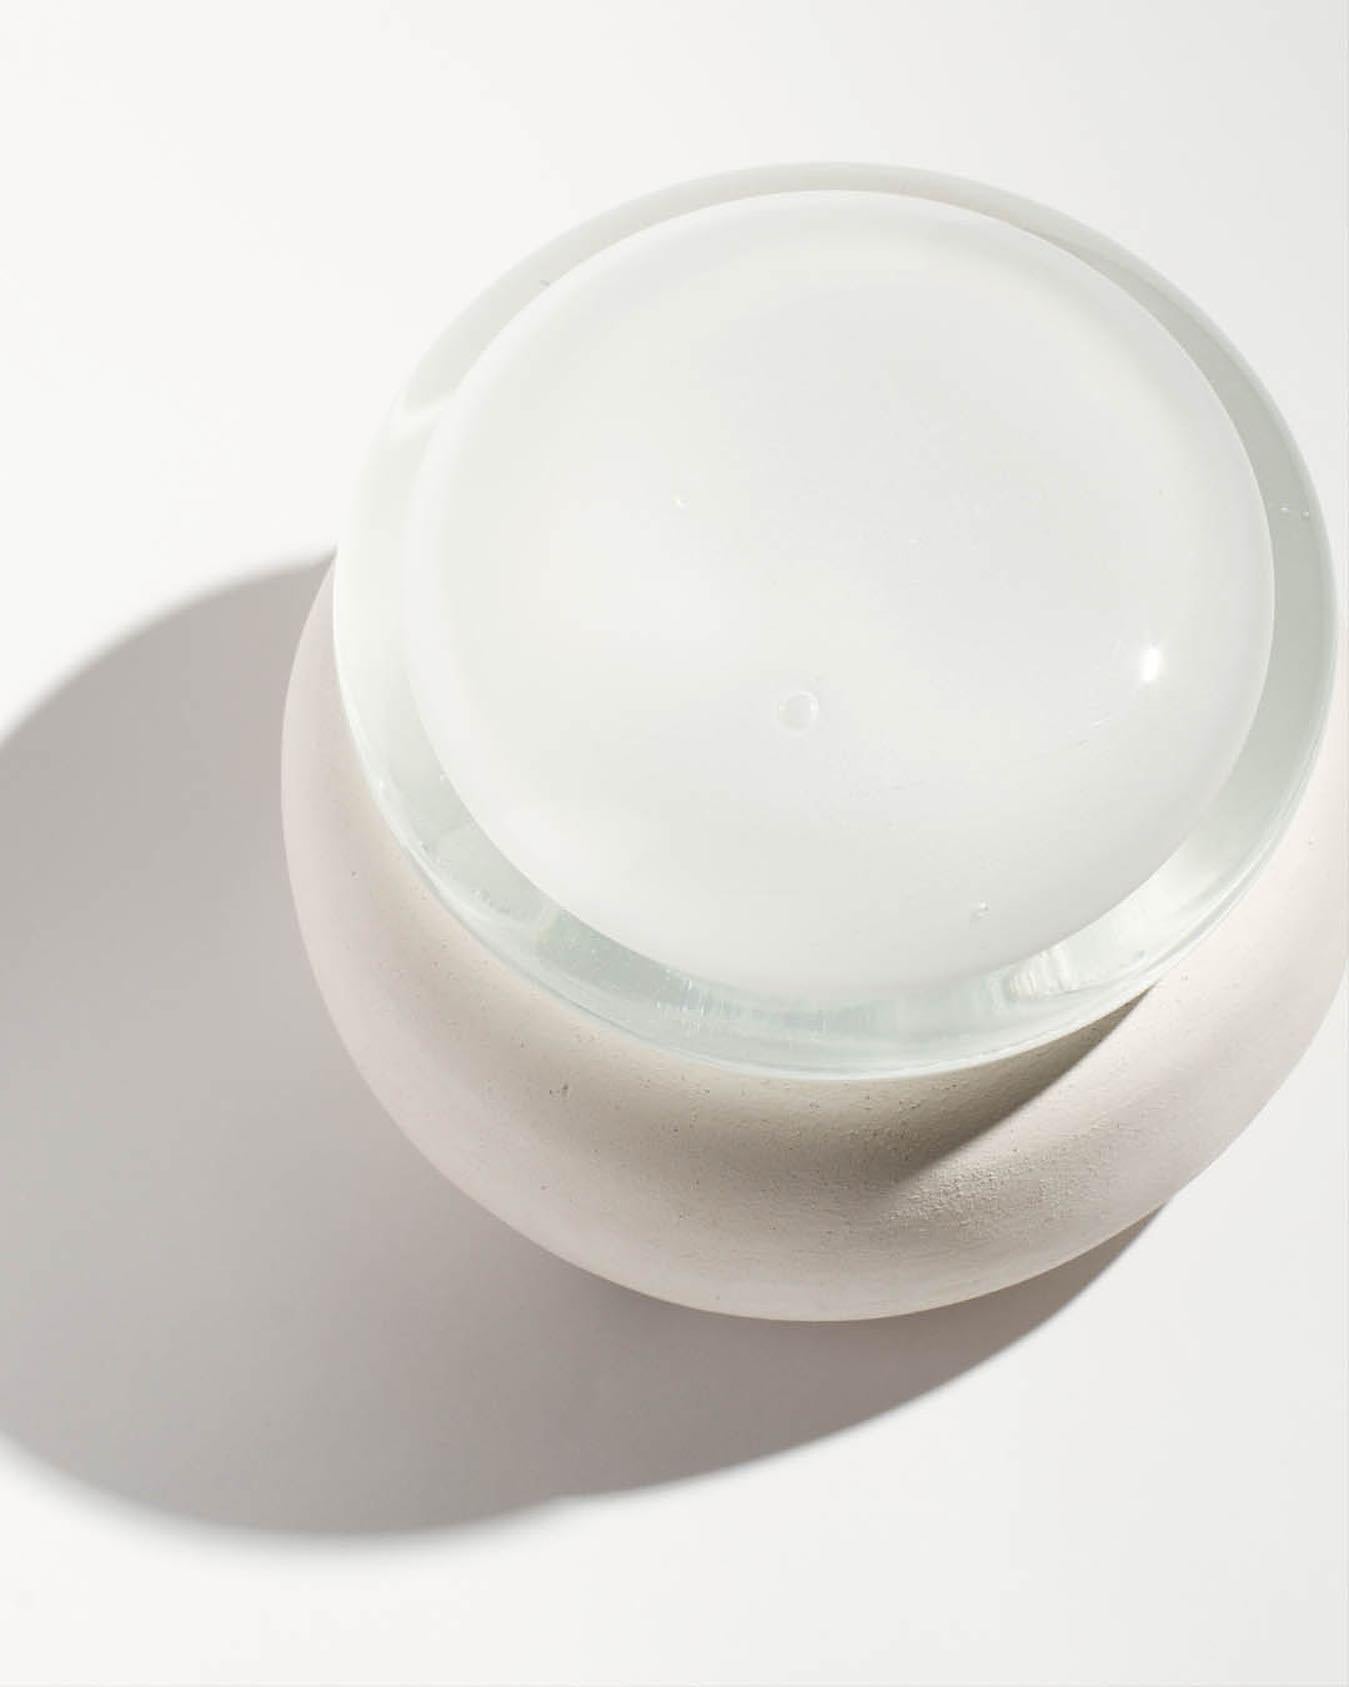 BESCHREIBUNG
DEW ist eine Lampe, die in der Technik des mundgeblasenen Glases mit absichtlicher natürlicher Verformung hergestellt wird.
Eine massive Glasschicht überträgt das Licht des weißen Herzens. Jeder Lampenschirm ist handgefertigt und hat